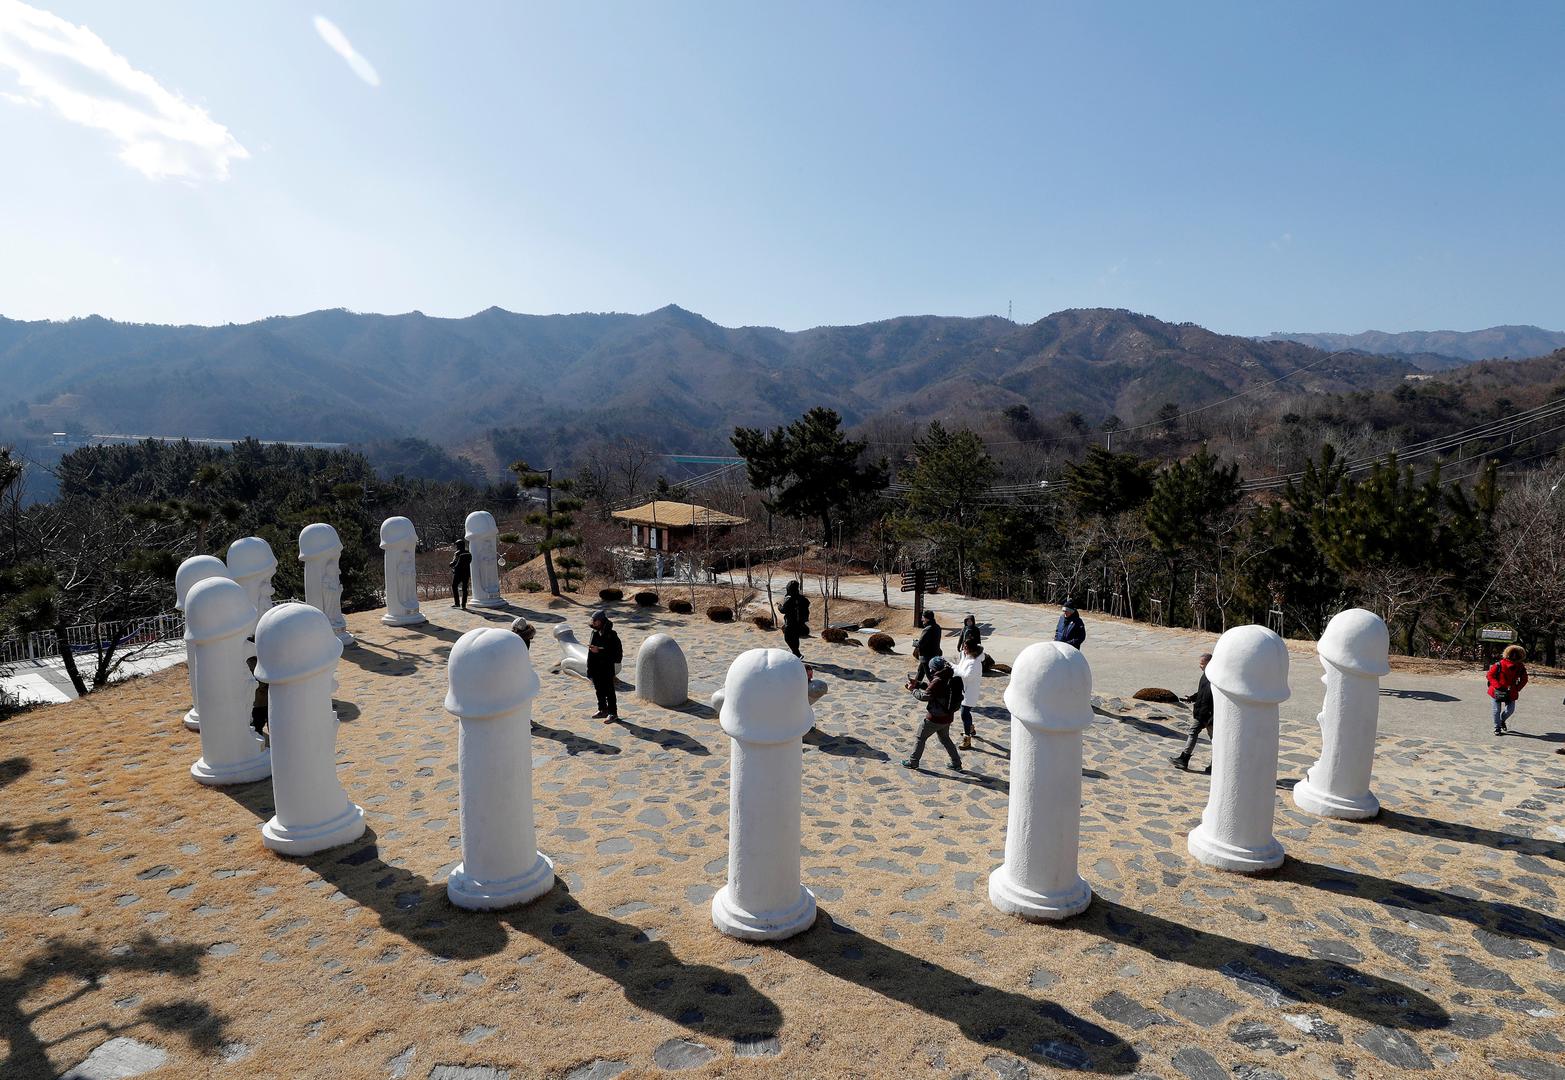 Jedna od njih je Haeshindang Park, odnosno 'Park penisa', udaljen sat vremena vožnje od Pjongčanga u kojem se nalaze gigantske skulpture muških spolnih organa izrađenih od drveta, kamena i plastike.